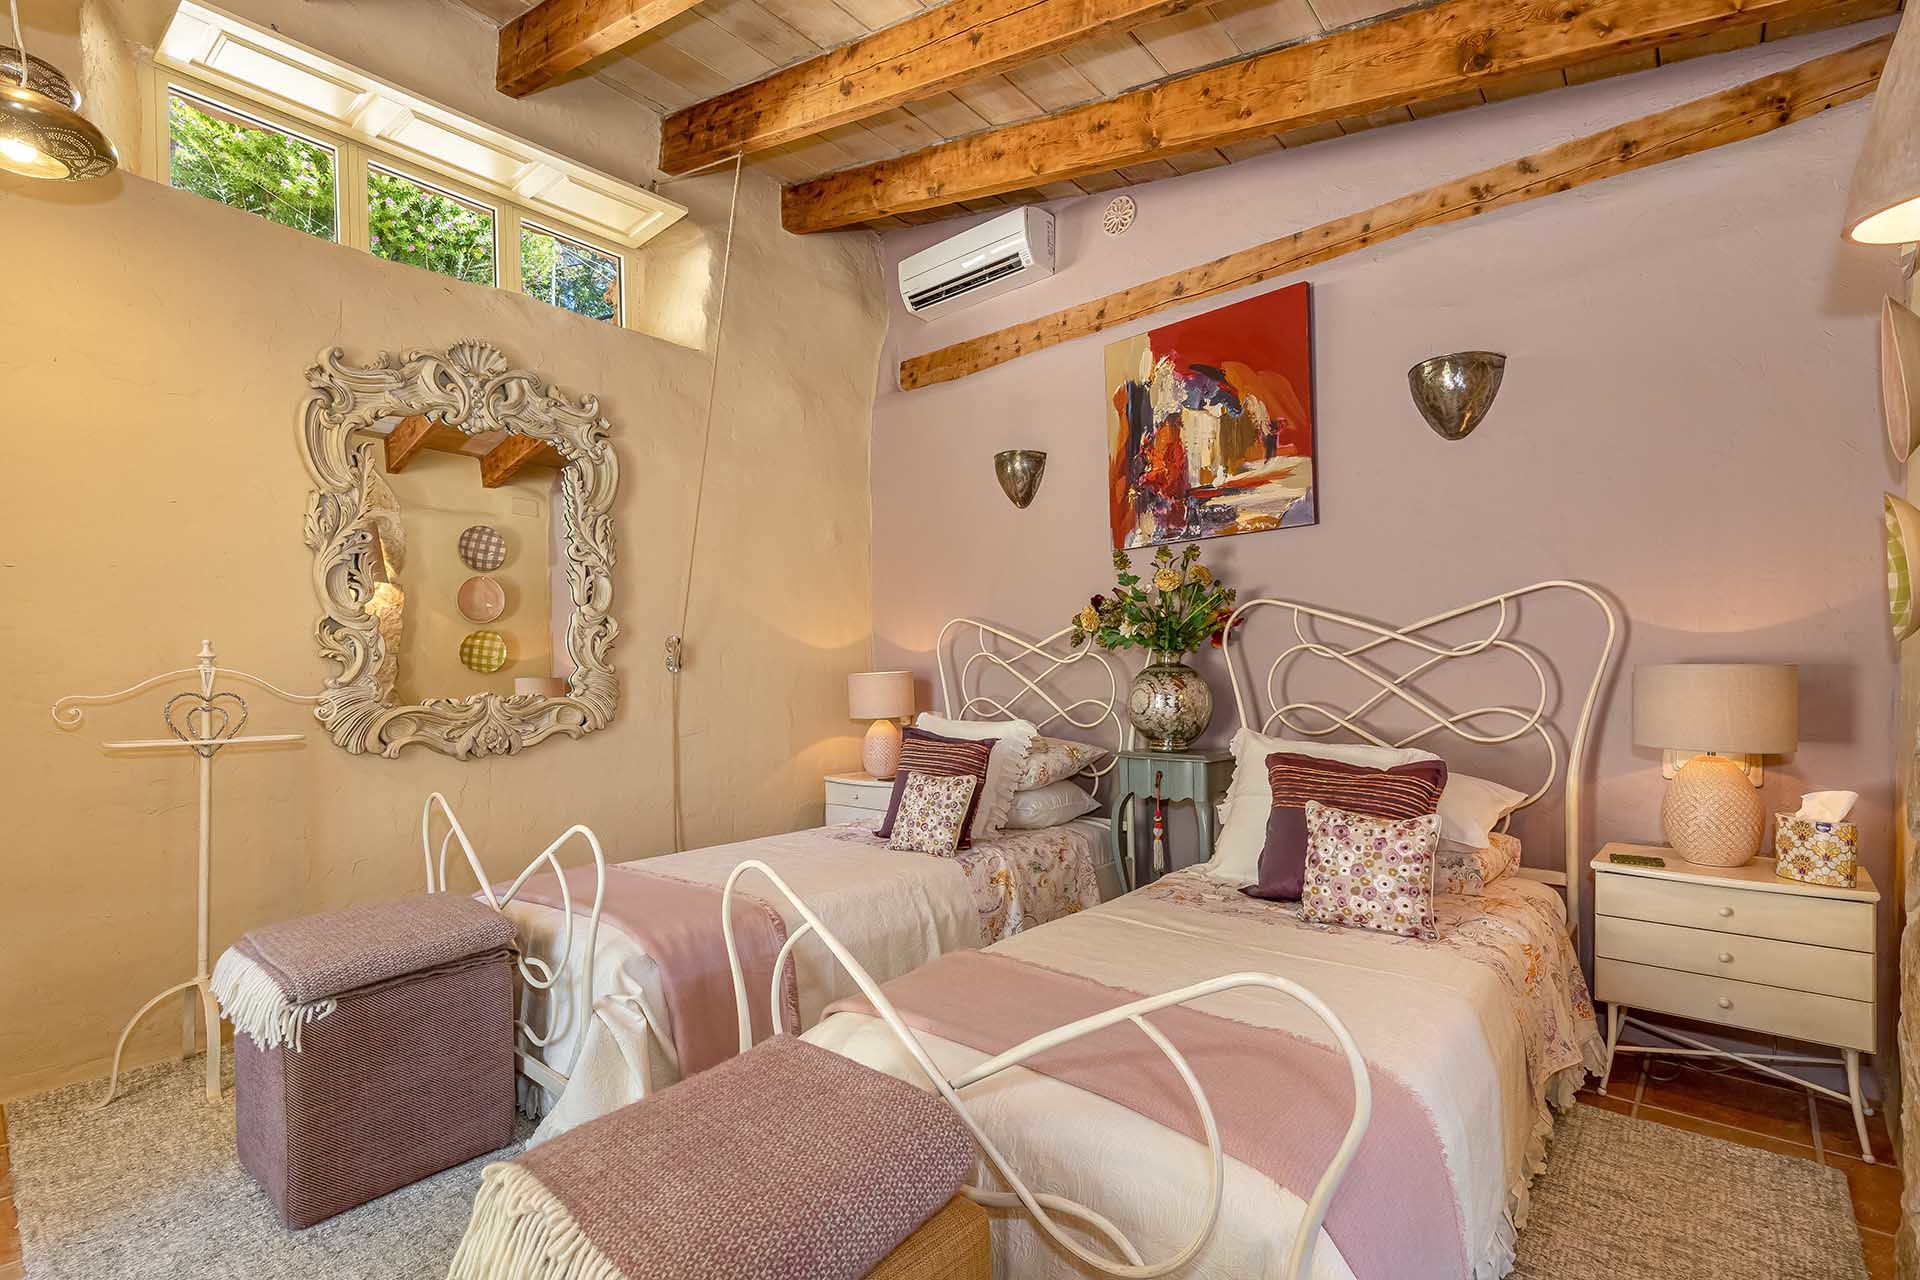 Wunderschöne Finca in malerischer Umgebung in S’Arraco - Schlafzimmer im Gästeappartement